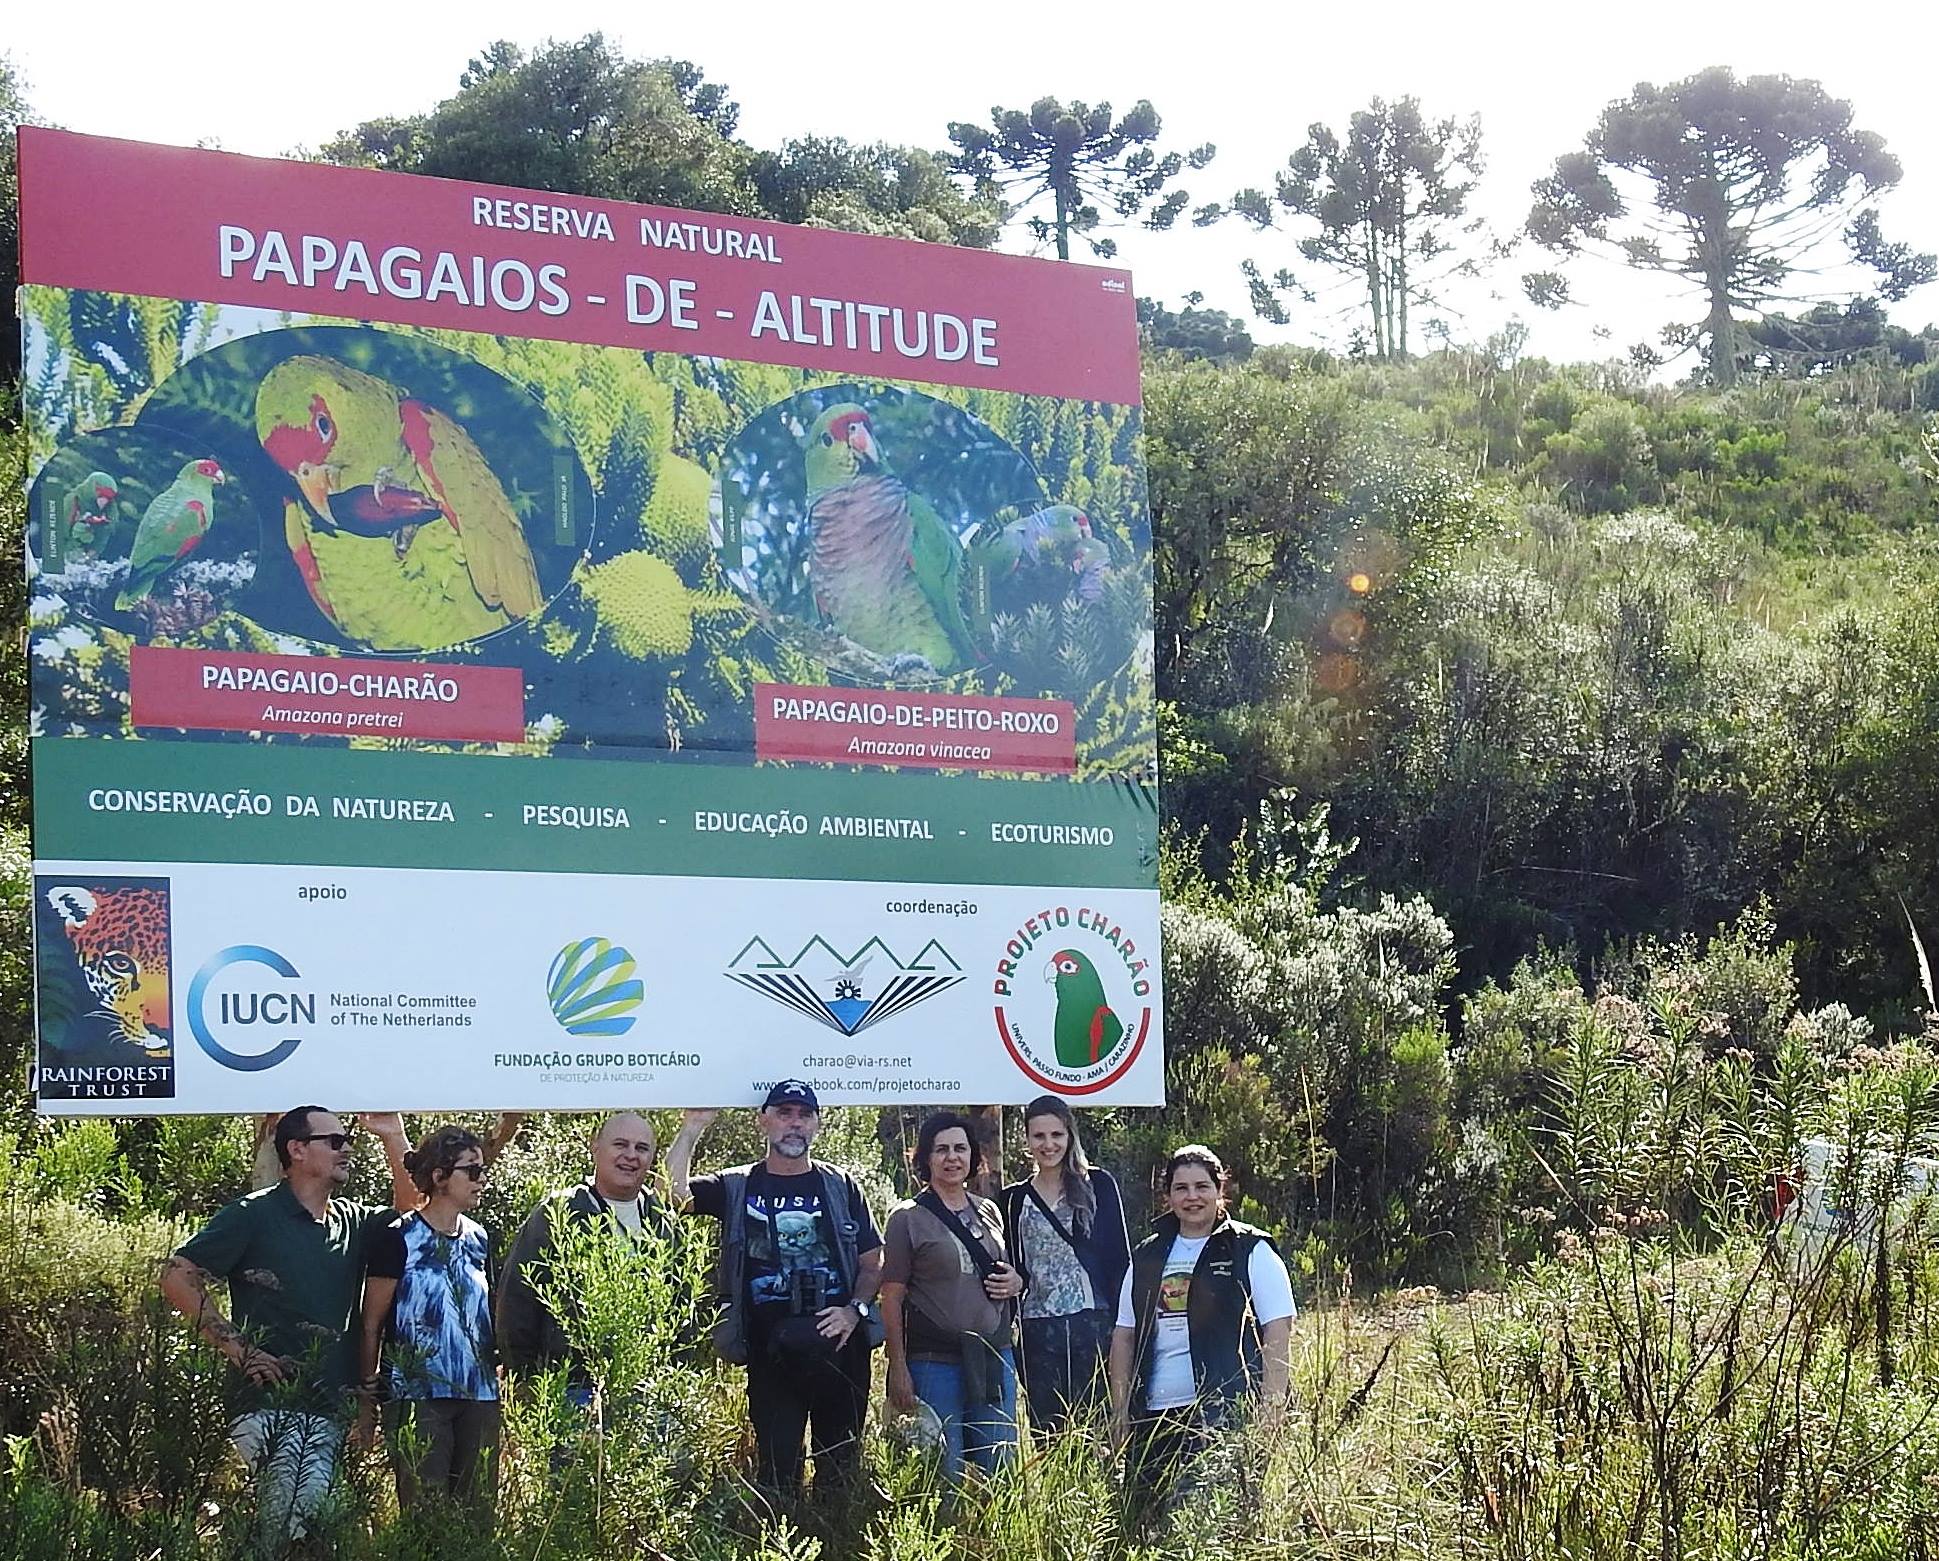 Em 14 de abril será inaugurada a Reserva Particular do Patrimônio Natural (RPPN) federal Papagaios-de-altitude, em Urupema (SC). Mais do que uma conquista válida para o meio ambiente, a área marca 25 anos de parceria entre pesquisadores e instituições de apoio à conservação da natureza. A Associação Amigos do Meio Ambiente (AMA) e a Fundação Grupo Boticário de Proteção à Natureza, desde 1993, atuam na conservação do papagaio-charão (Amazona pretrei) e do papagaio-do-peito-roxo (Amazona vinacea) por meio de iniciativas realizadas no Rio Grande do Sul, Santa Catarina, Paraná e, mais recentemente, no Sudeste do País.